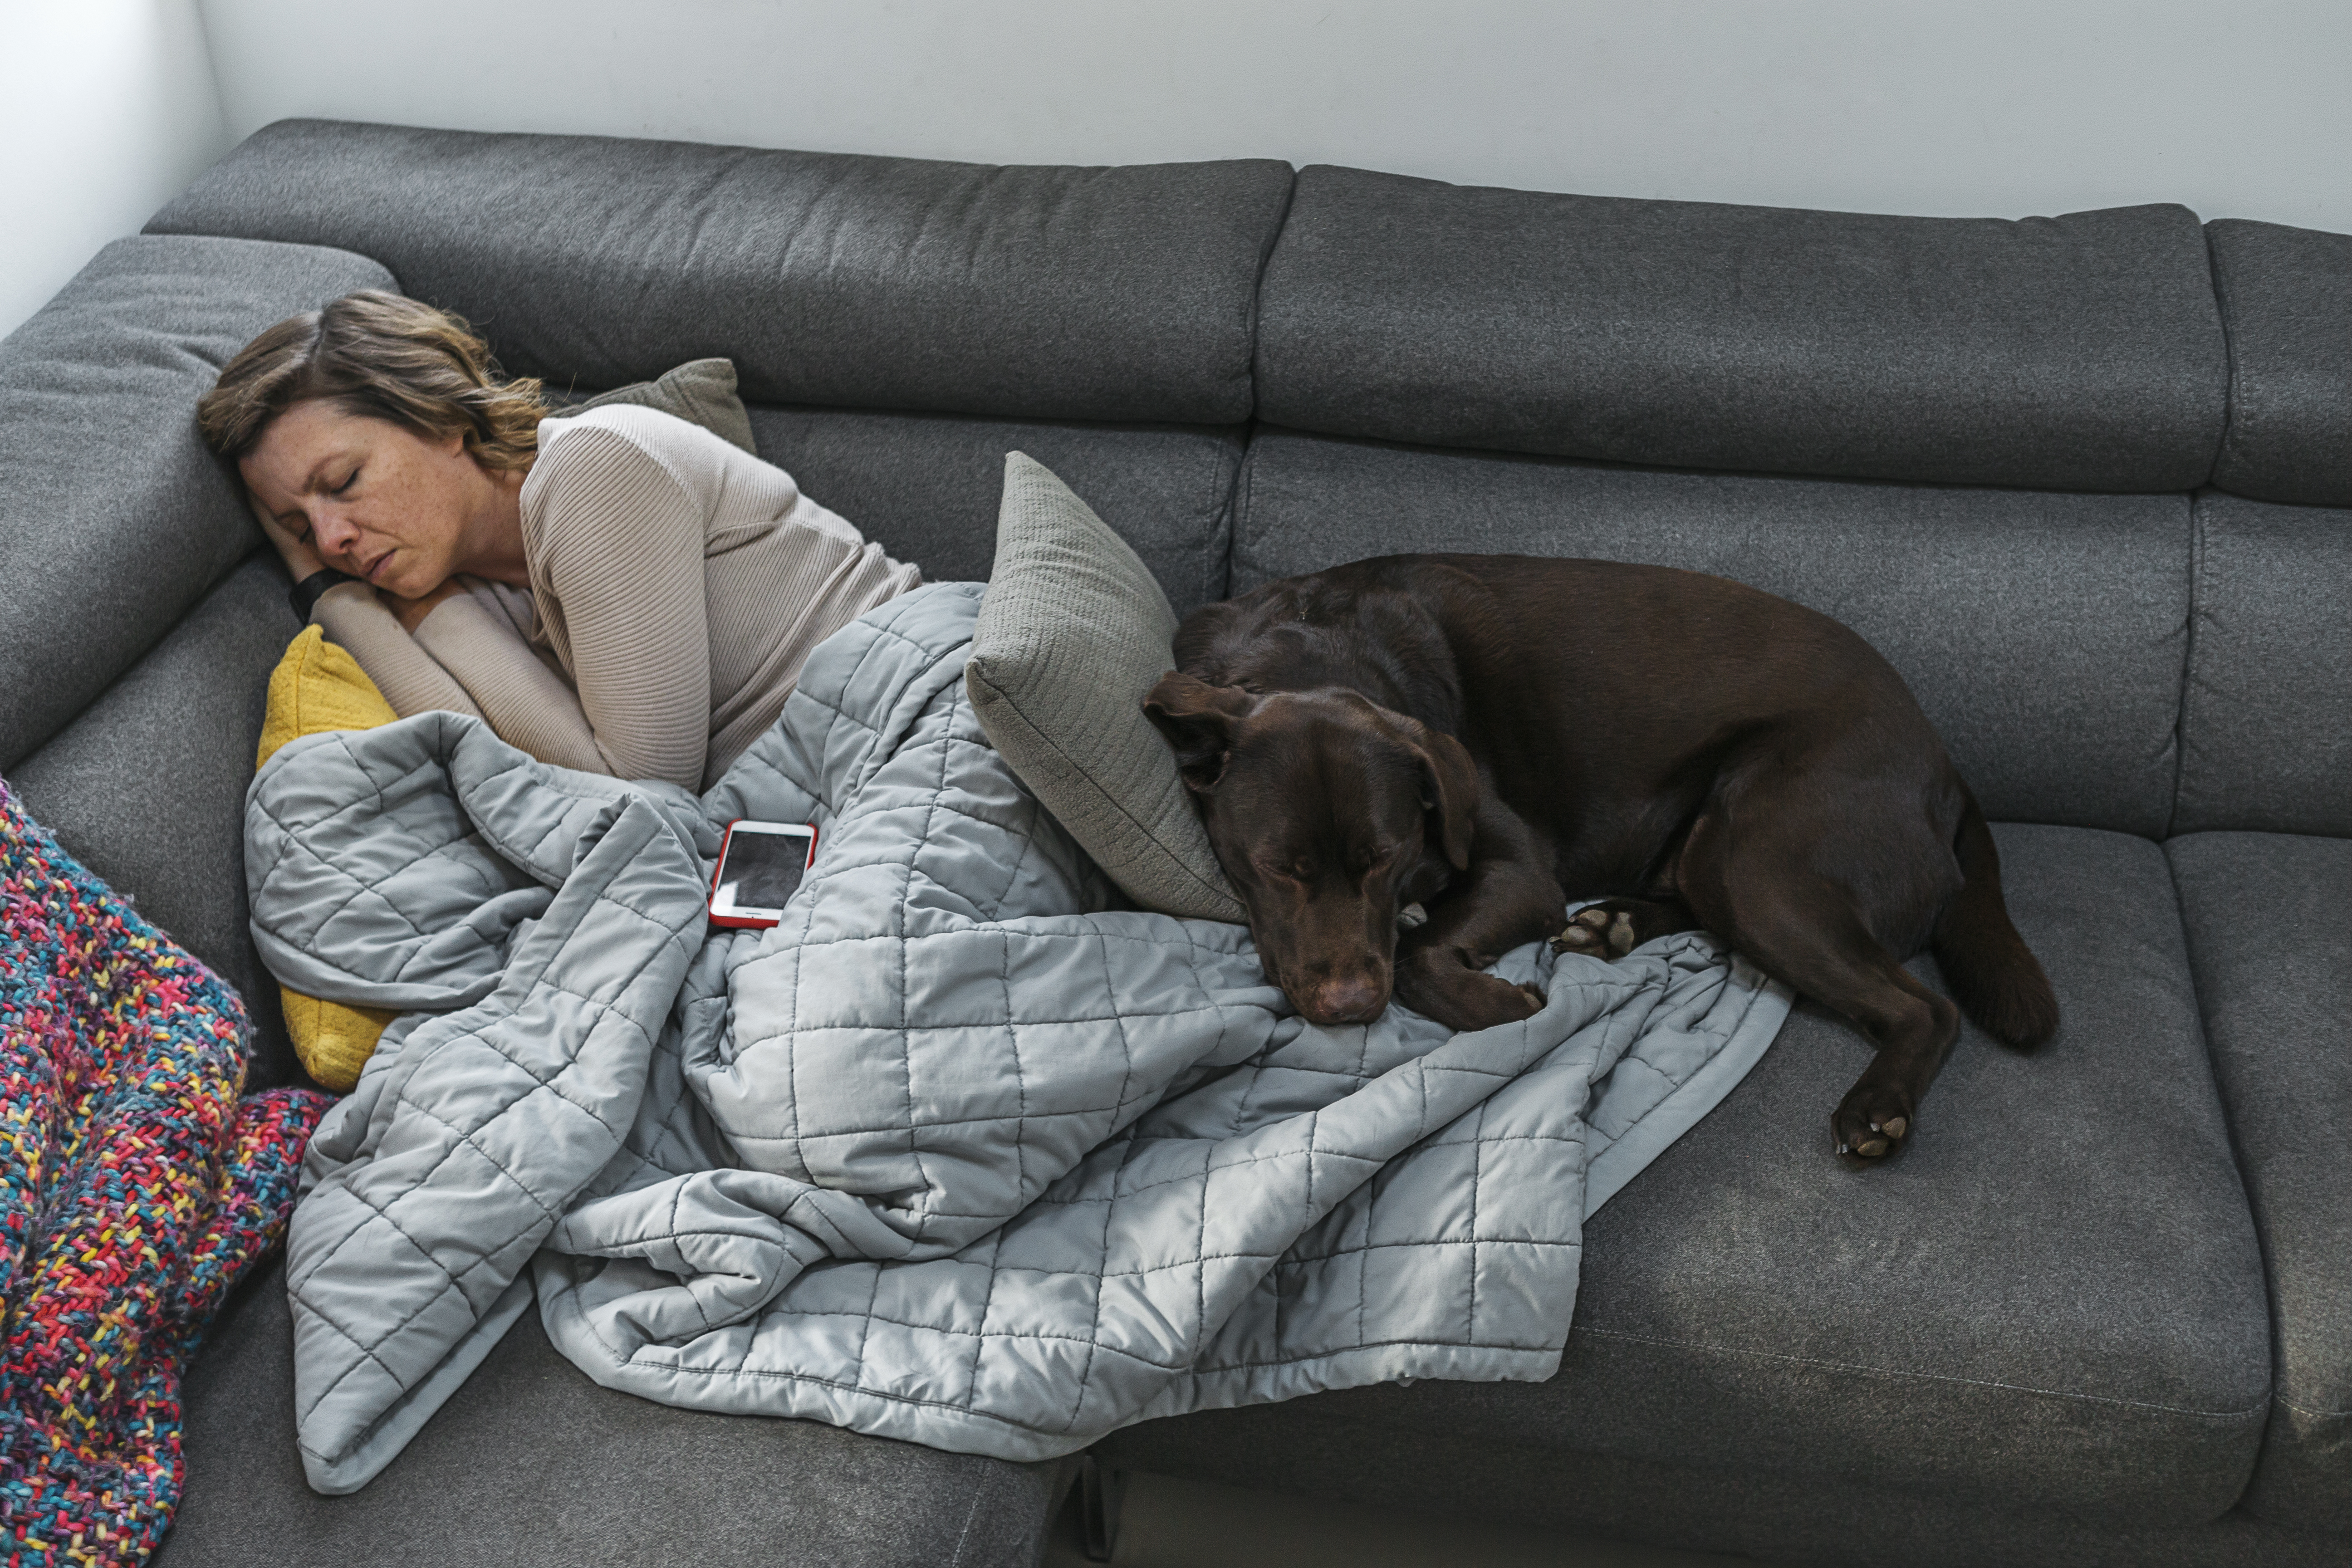 Los expertos recomienda dormir entre 7 y 8 horas diarias y en un lugar cómodo